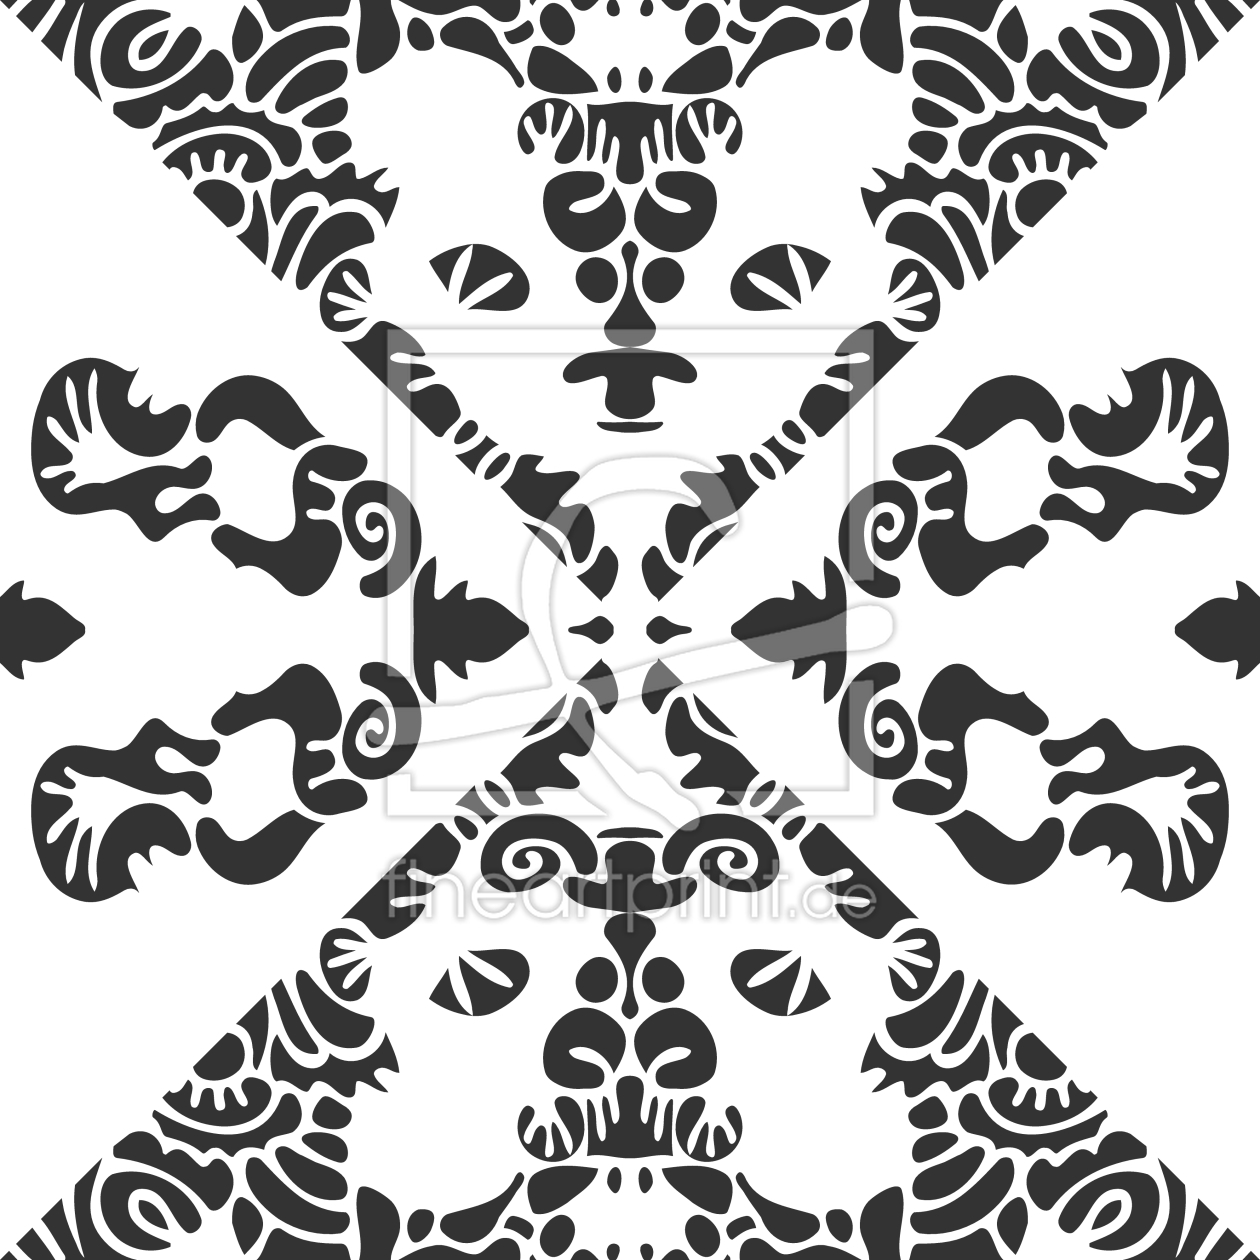 Bild-Nr.: 9011224 Filigrane Verzierungen erstellt von patterndesigns-com